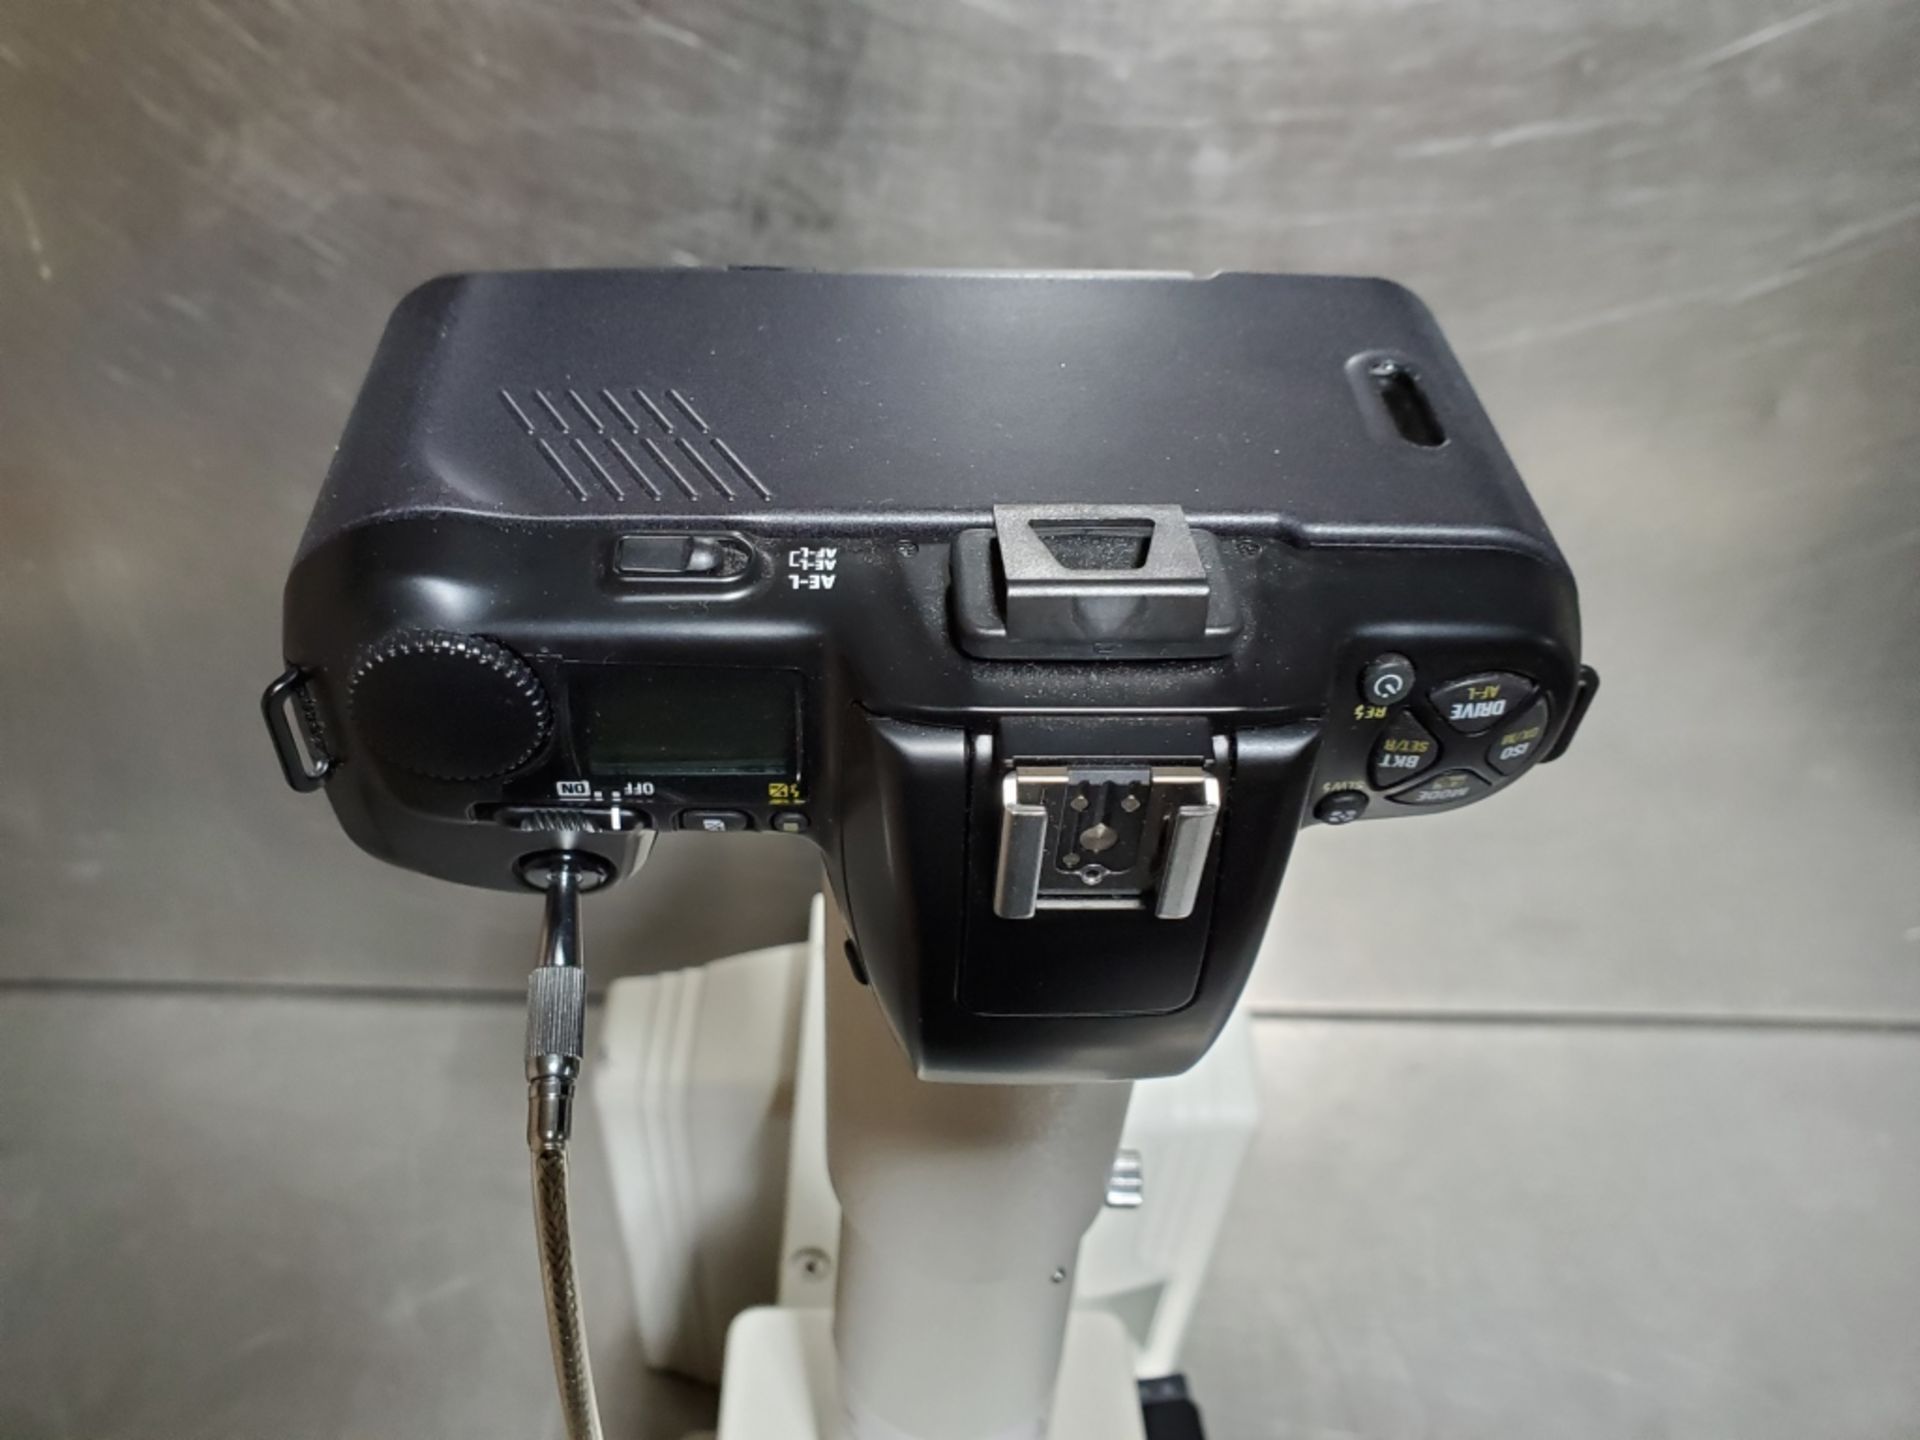 Nikon Eclipse Model E600 Microscope - Image 6 of 15